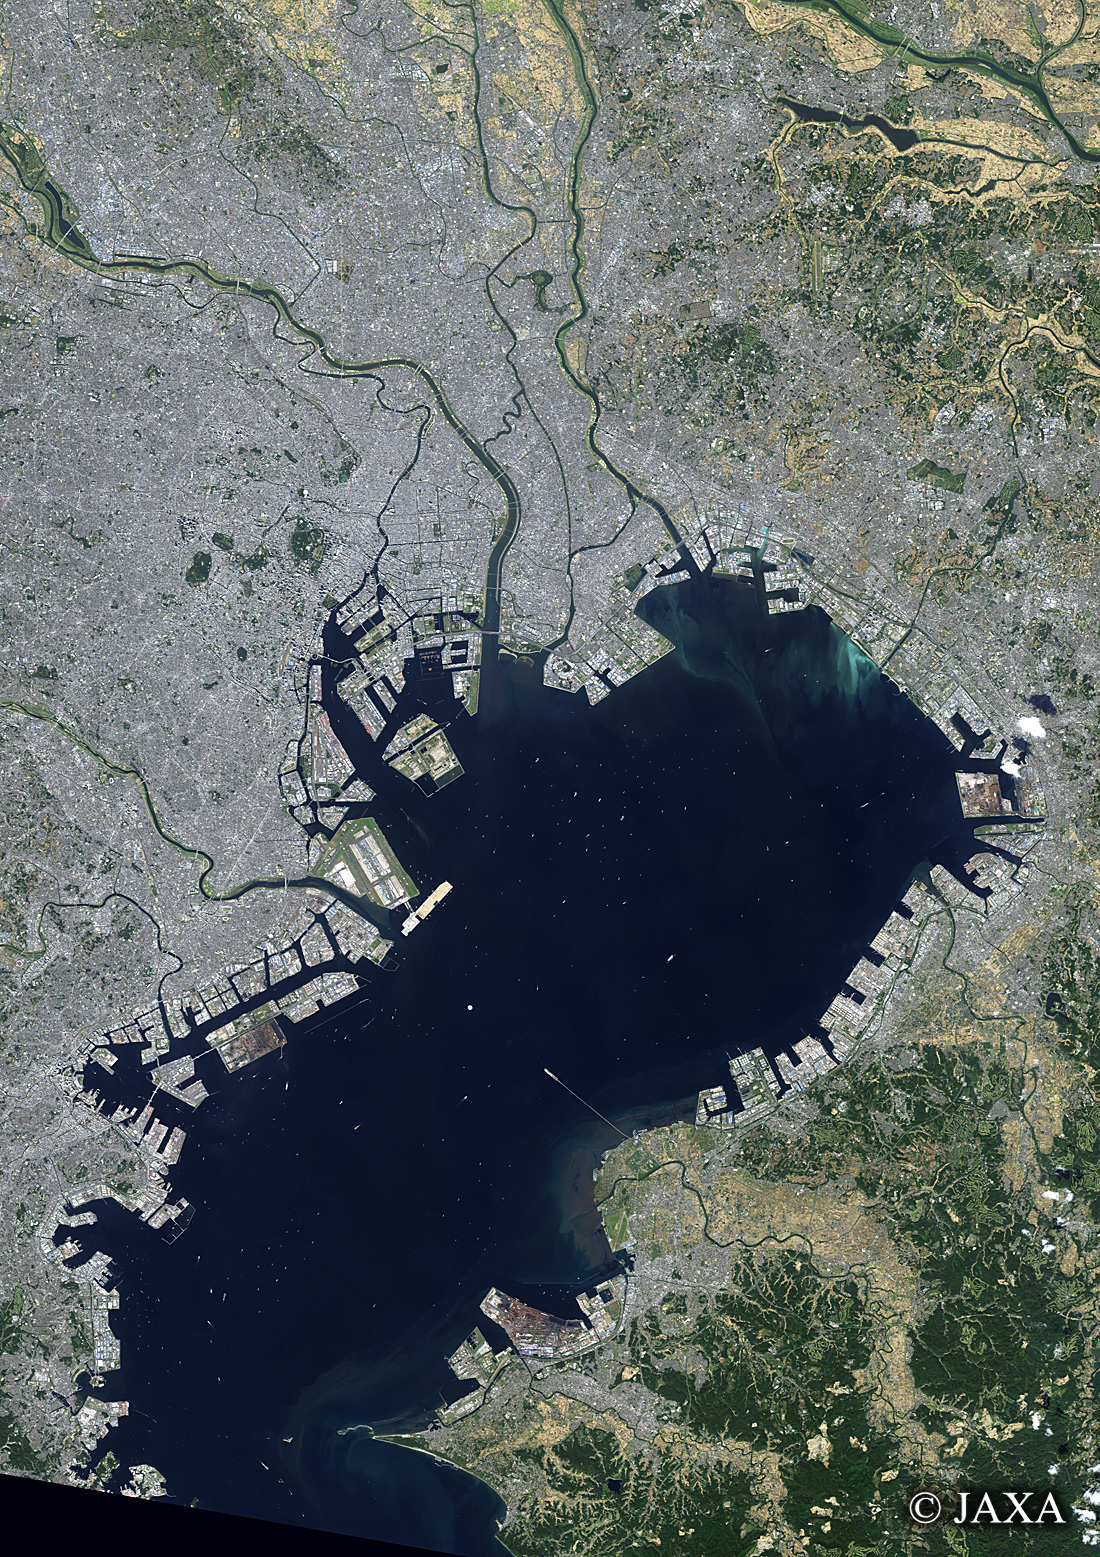 だいちから見た日本の都市 東京湾:衛星画像